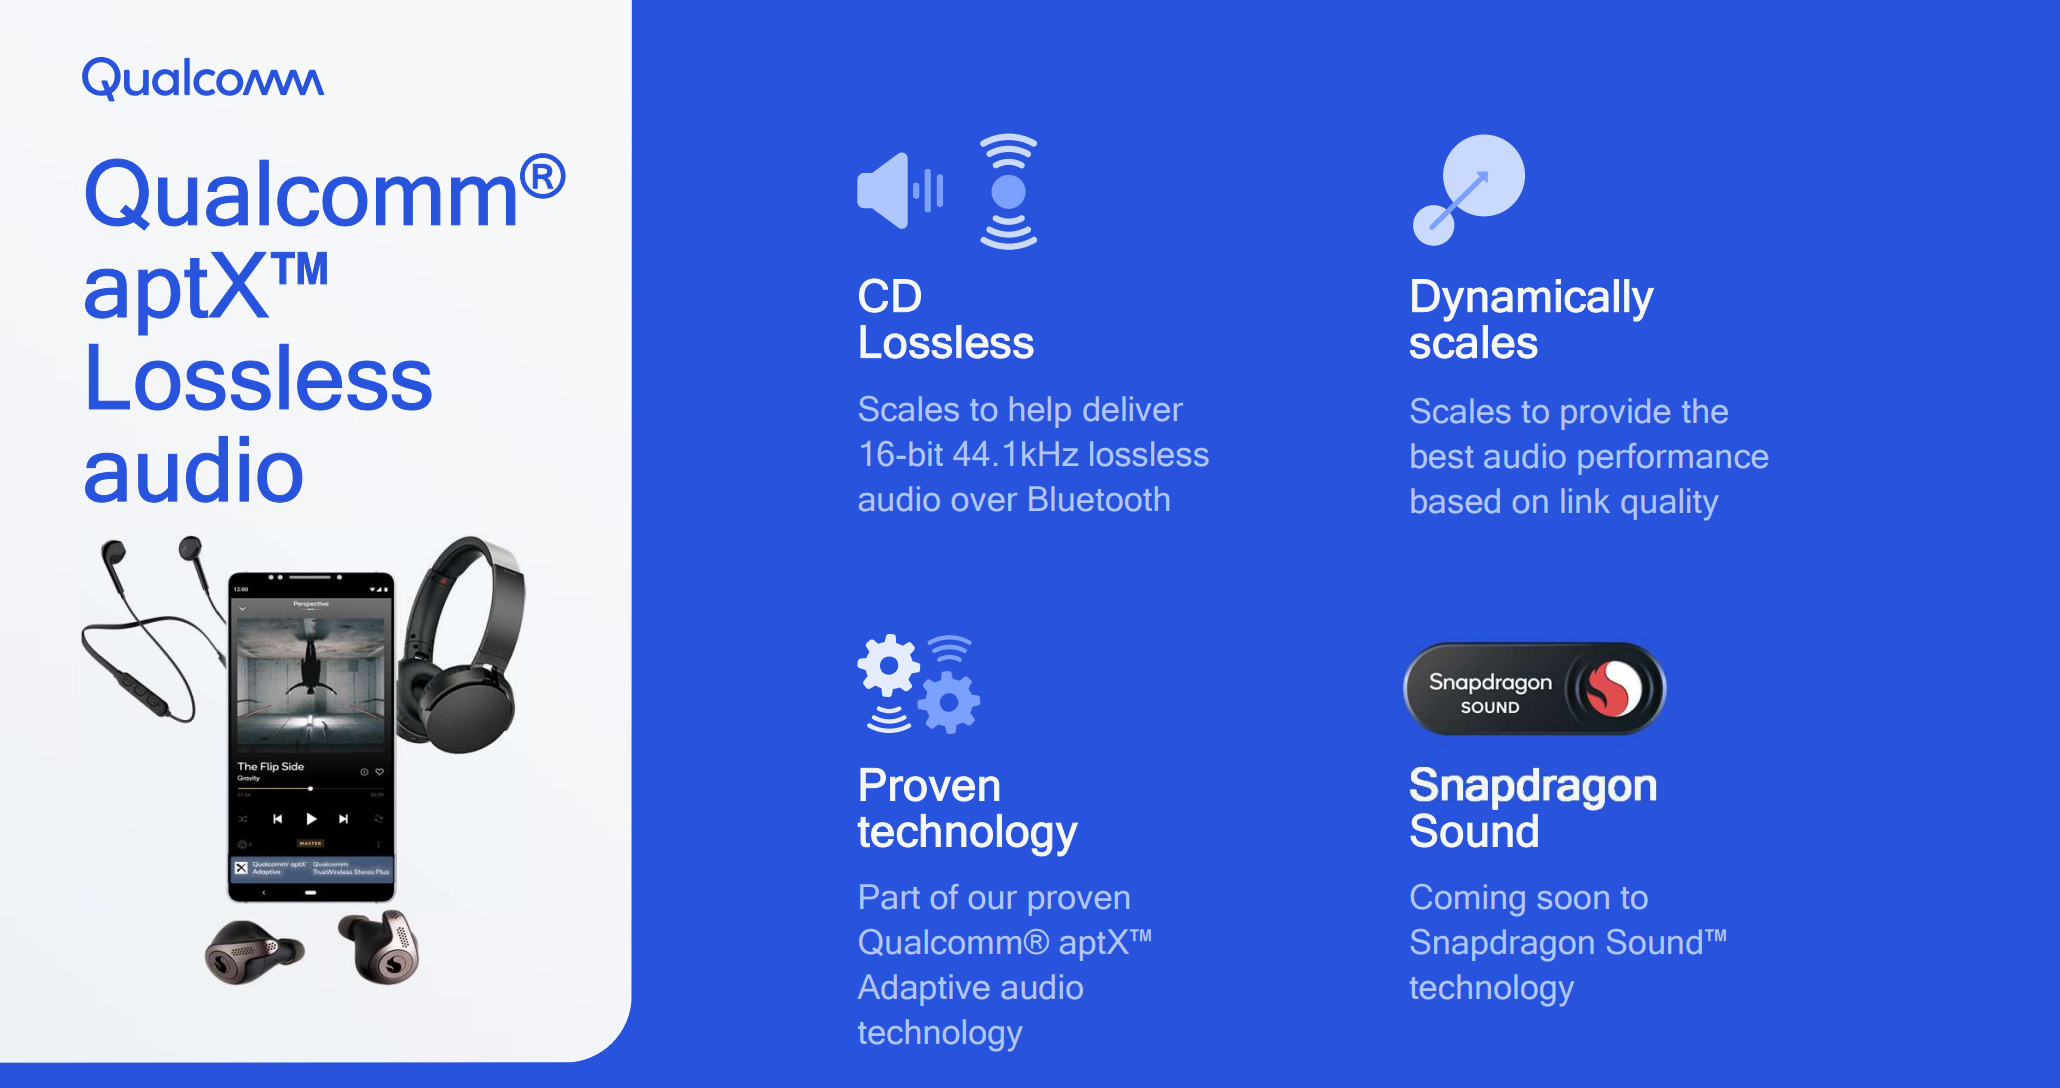 Jabra Extreme 2, une oreillette Bluetooth multipoint haute fidélité